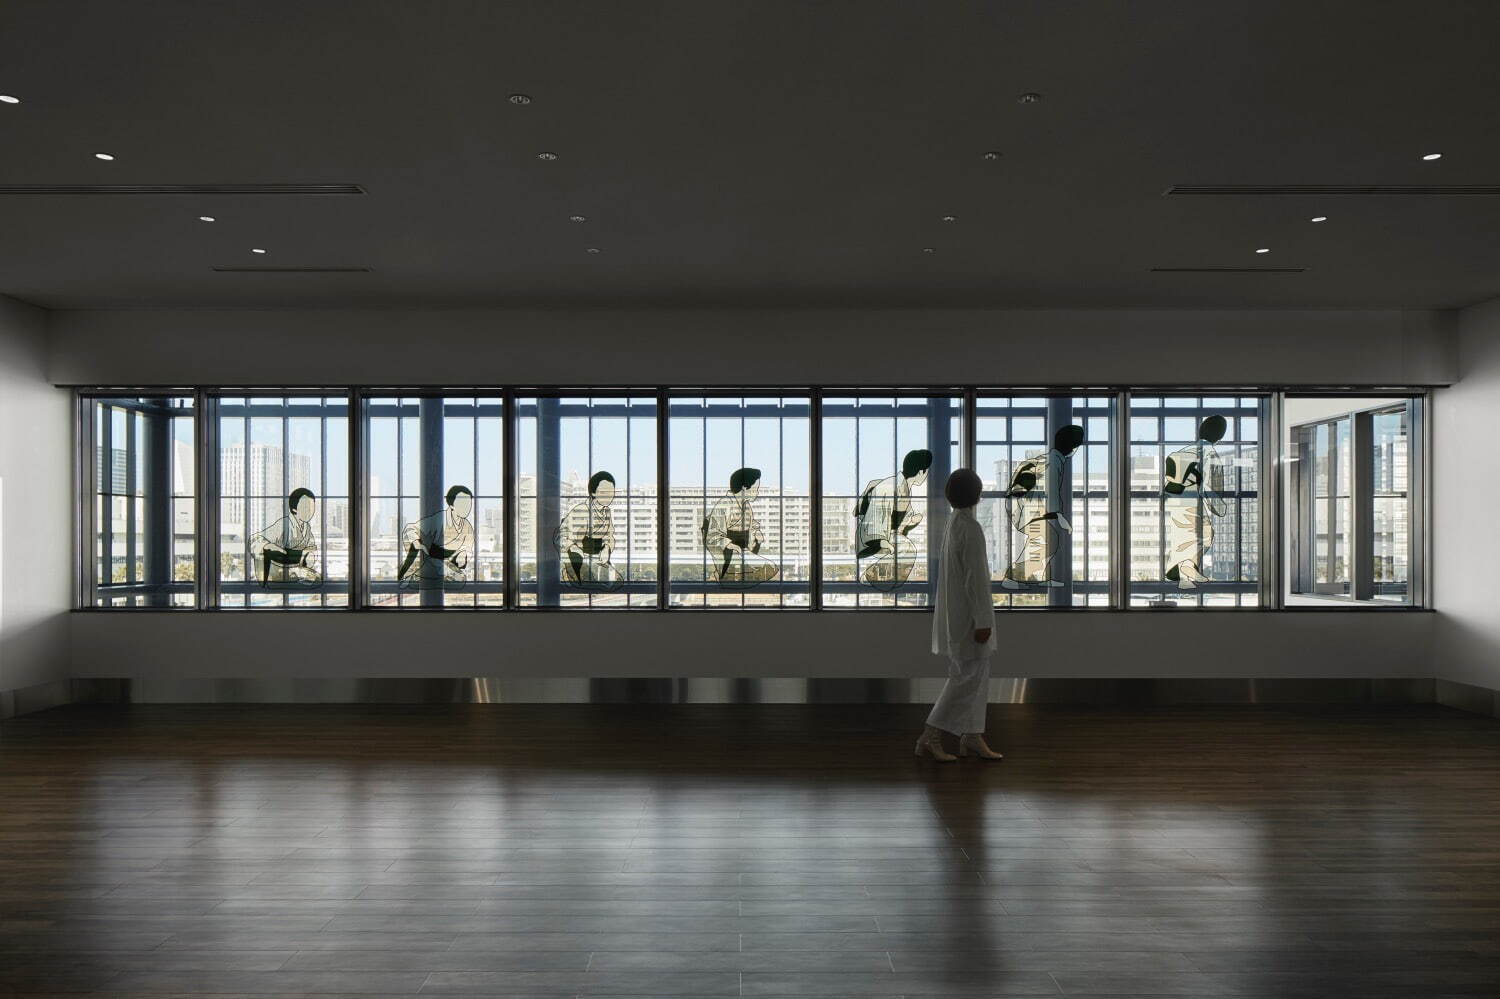 津田道子 《東京仕草》 2021年
「Back TOKYO Forth」展示風景(東京国際クルーズターミナル、 2021年)
撮影：Akira Arai (Nacása & Partners Inc.)